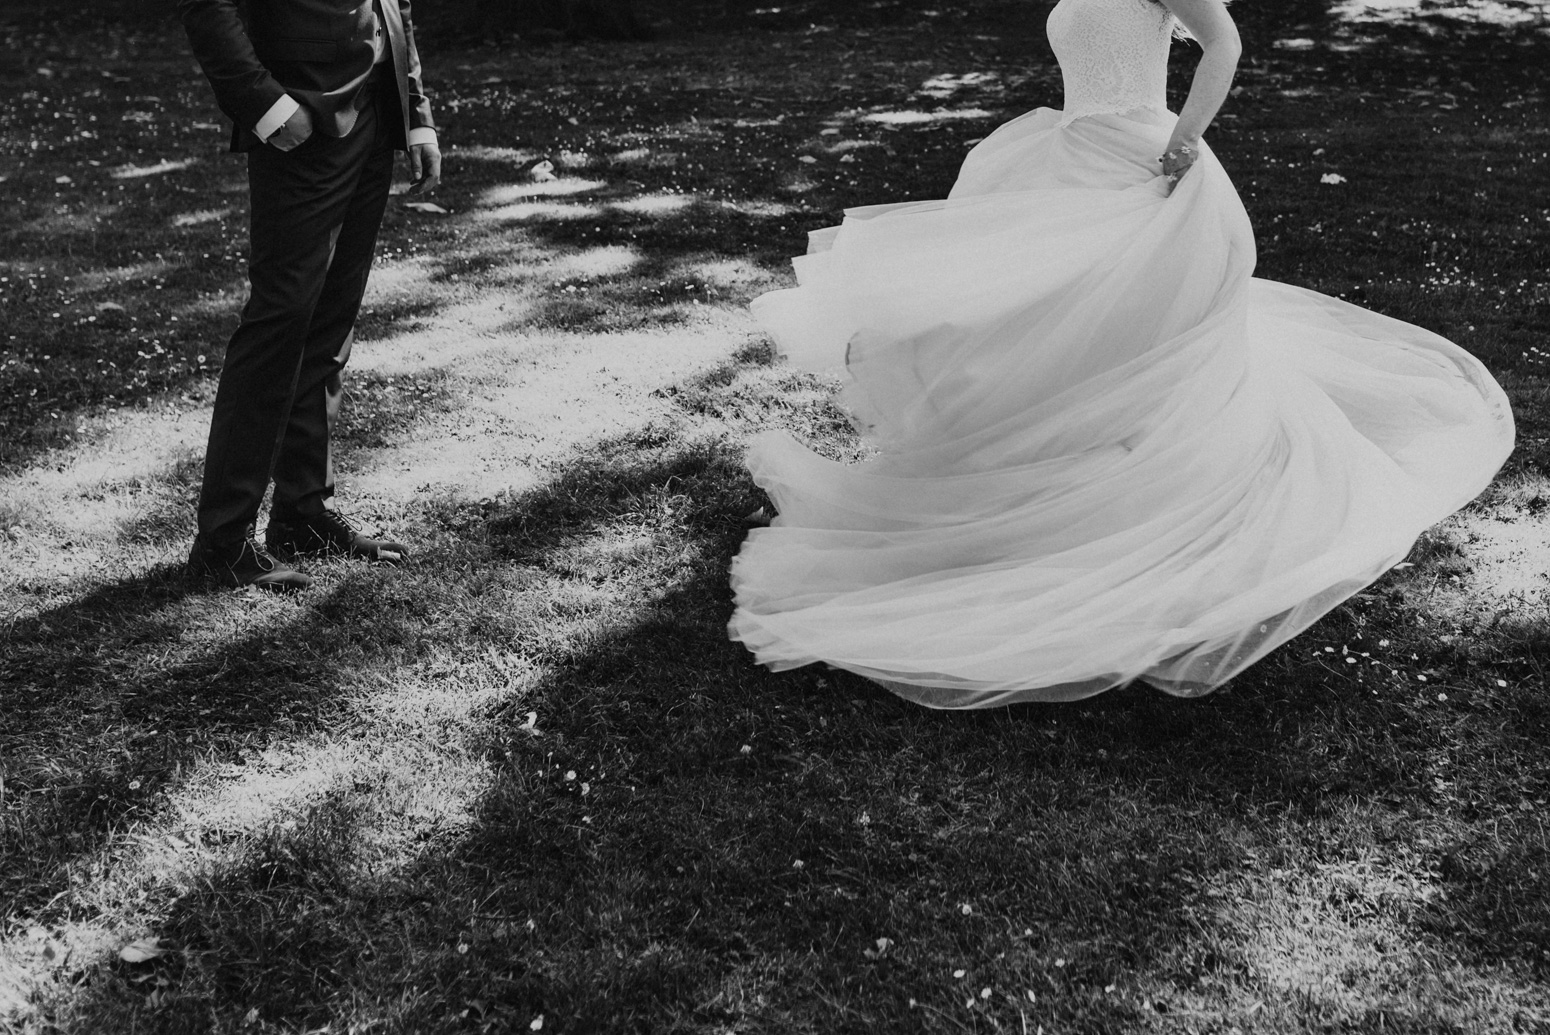 Brautpaarshooting im Redoutenpark in Bad Godesberg. Hochzeitsfotografin Daria Becker von Genuine Bonds aus Köln